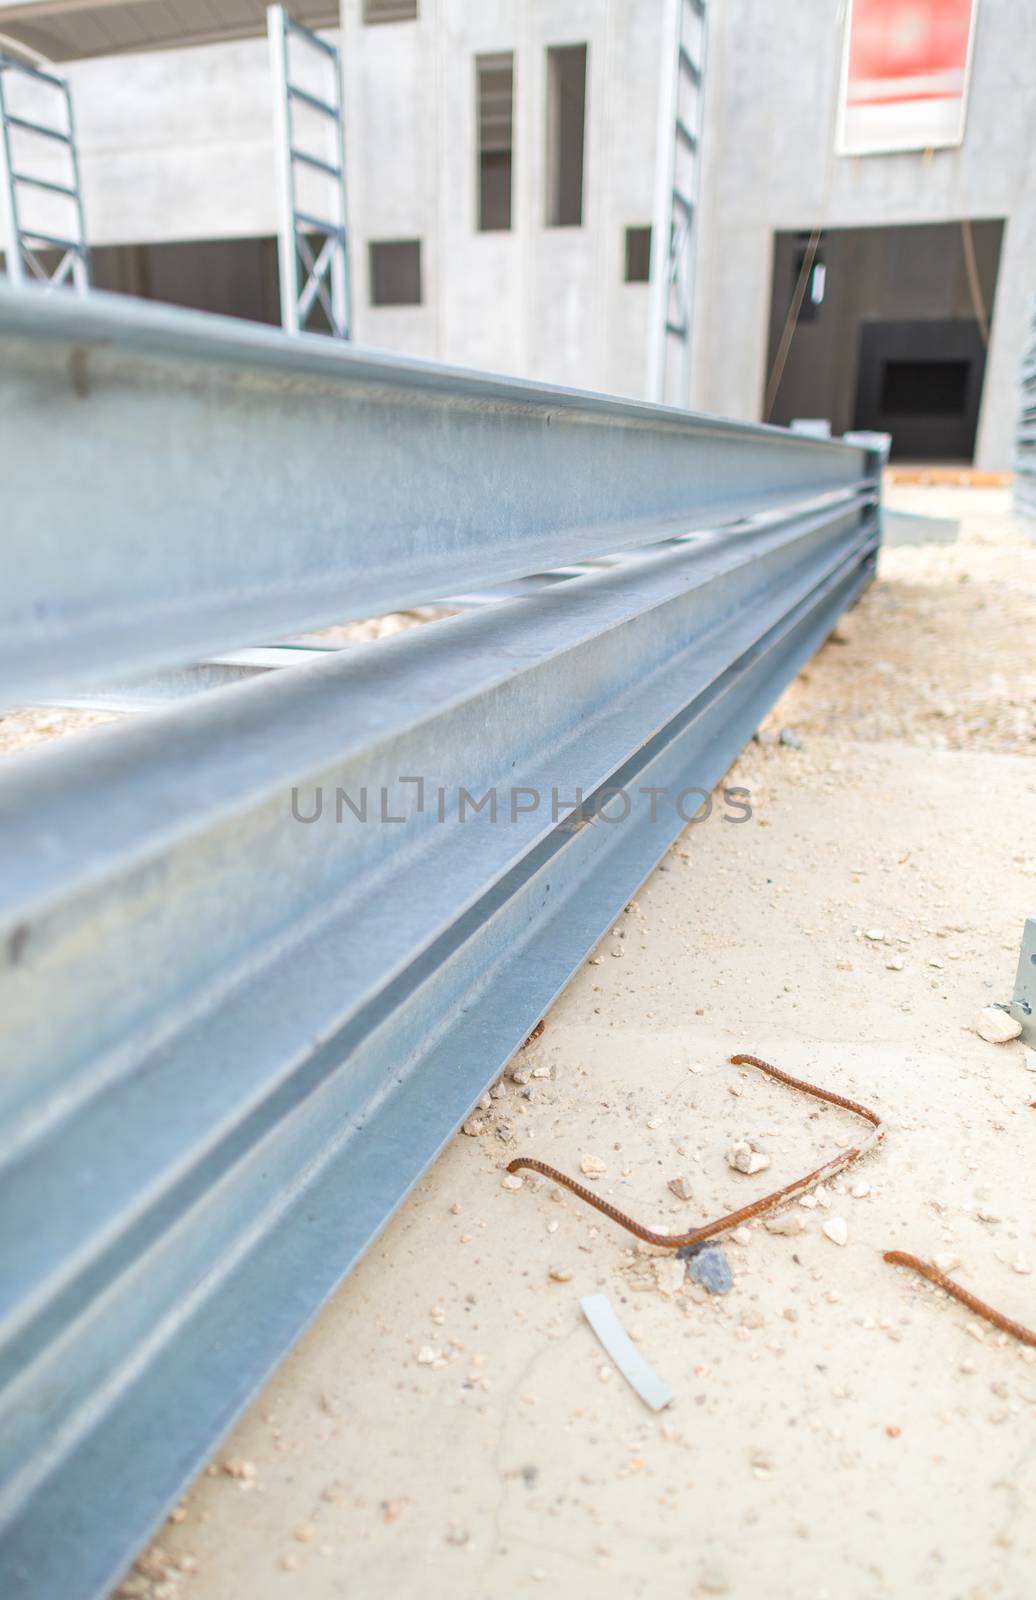 Steel girders in outdoor warehouse.